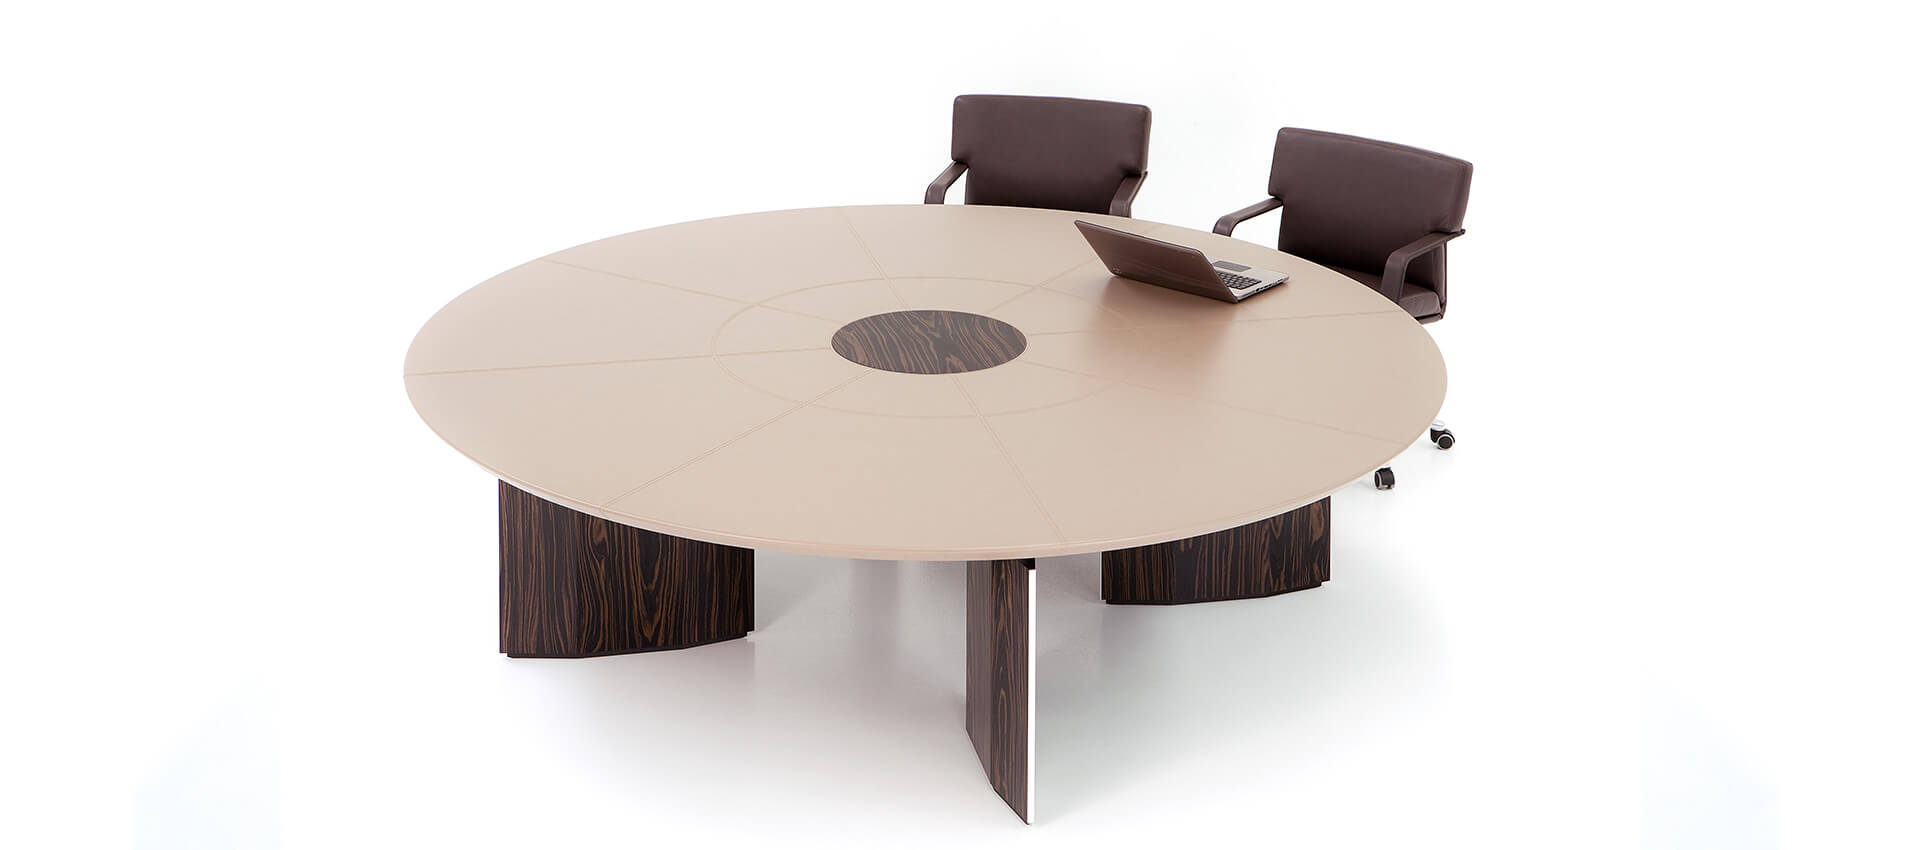 круглый стол для переговоров на 12 человек